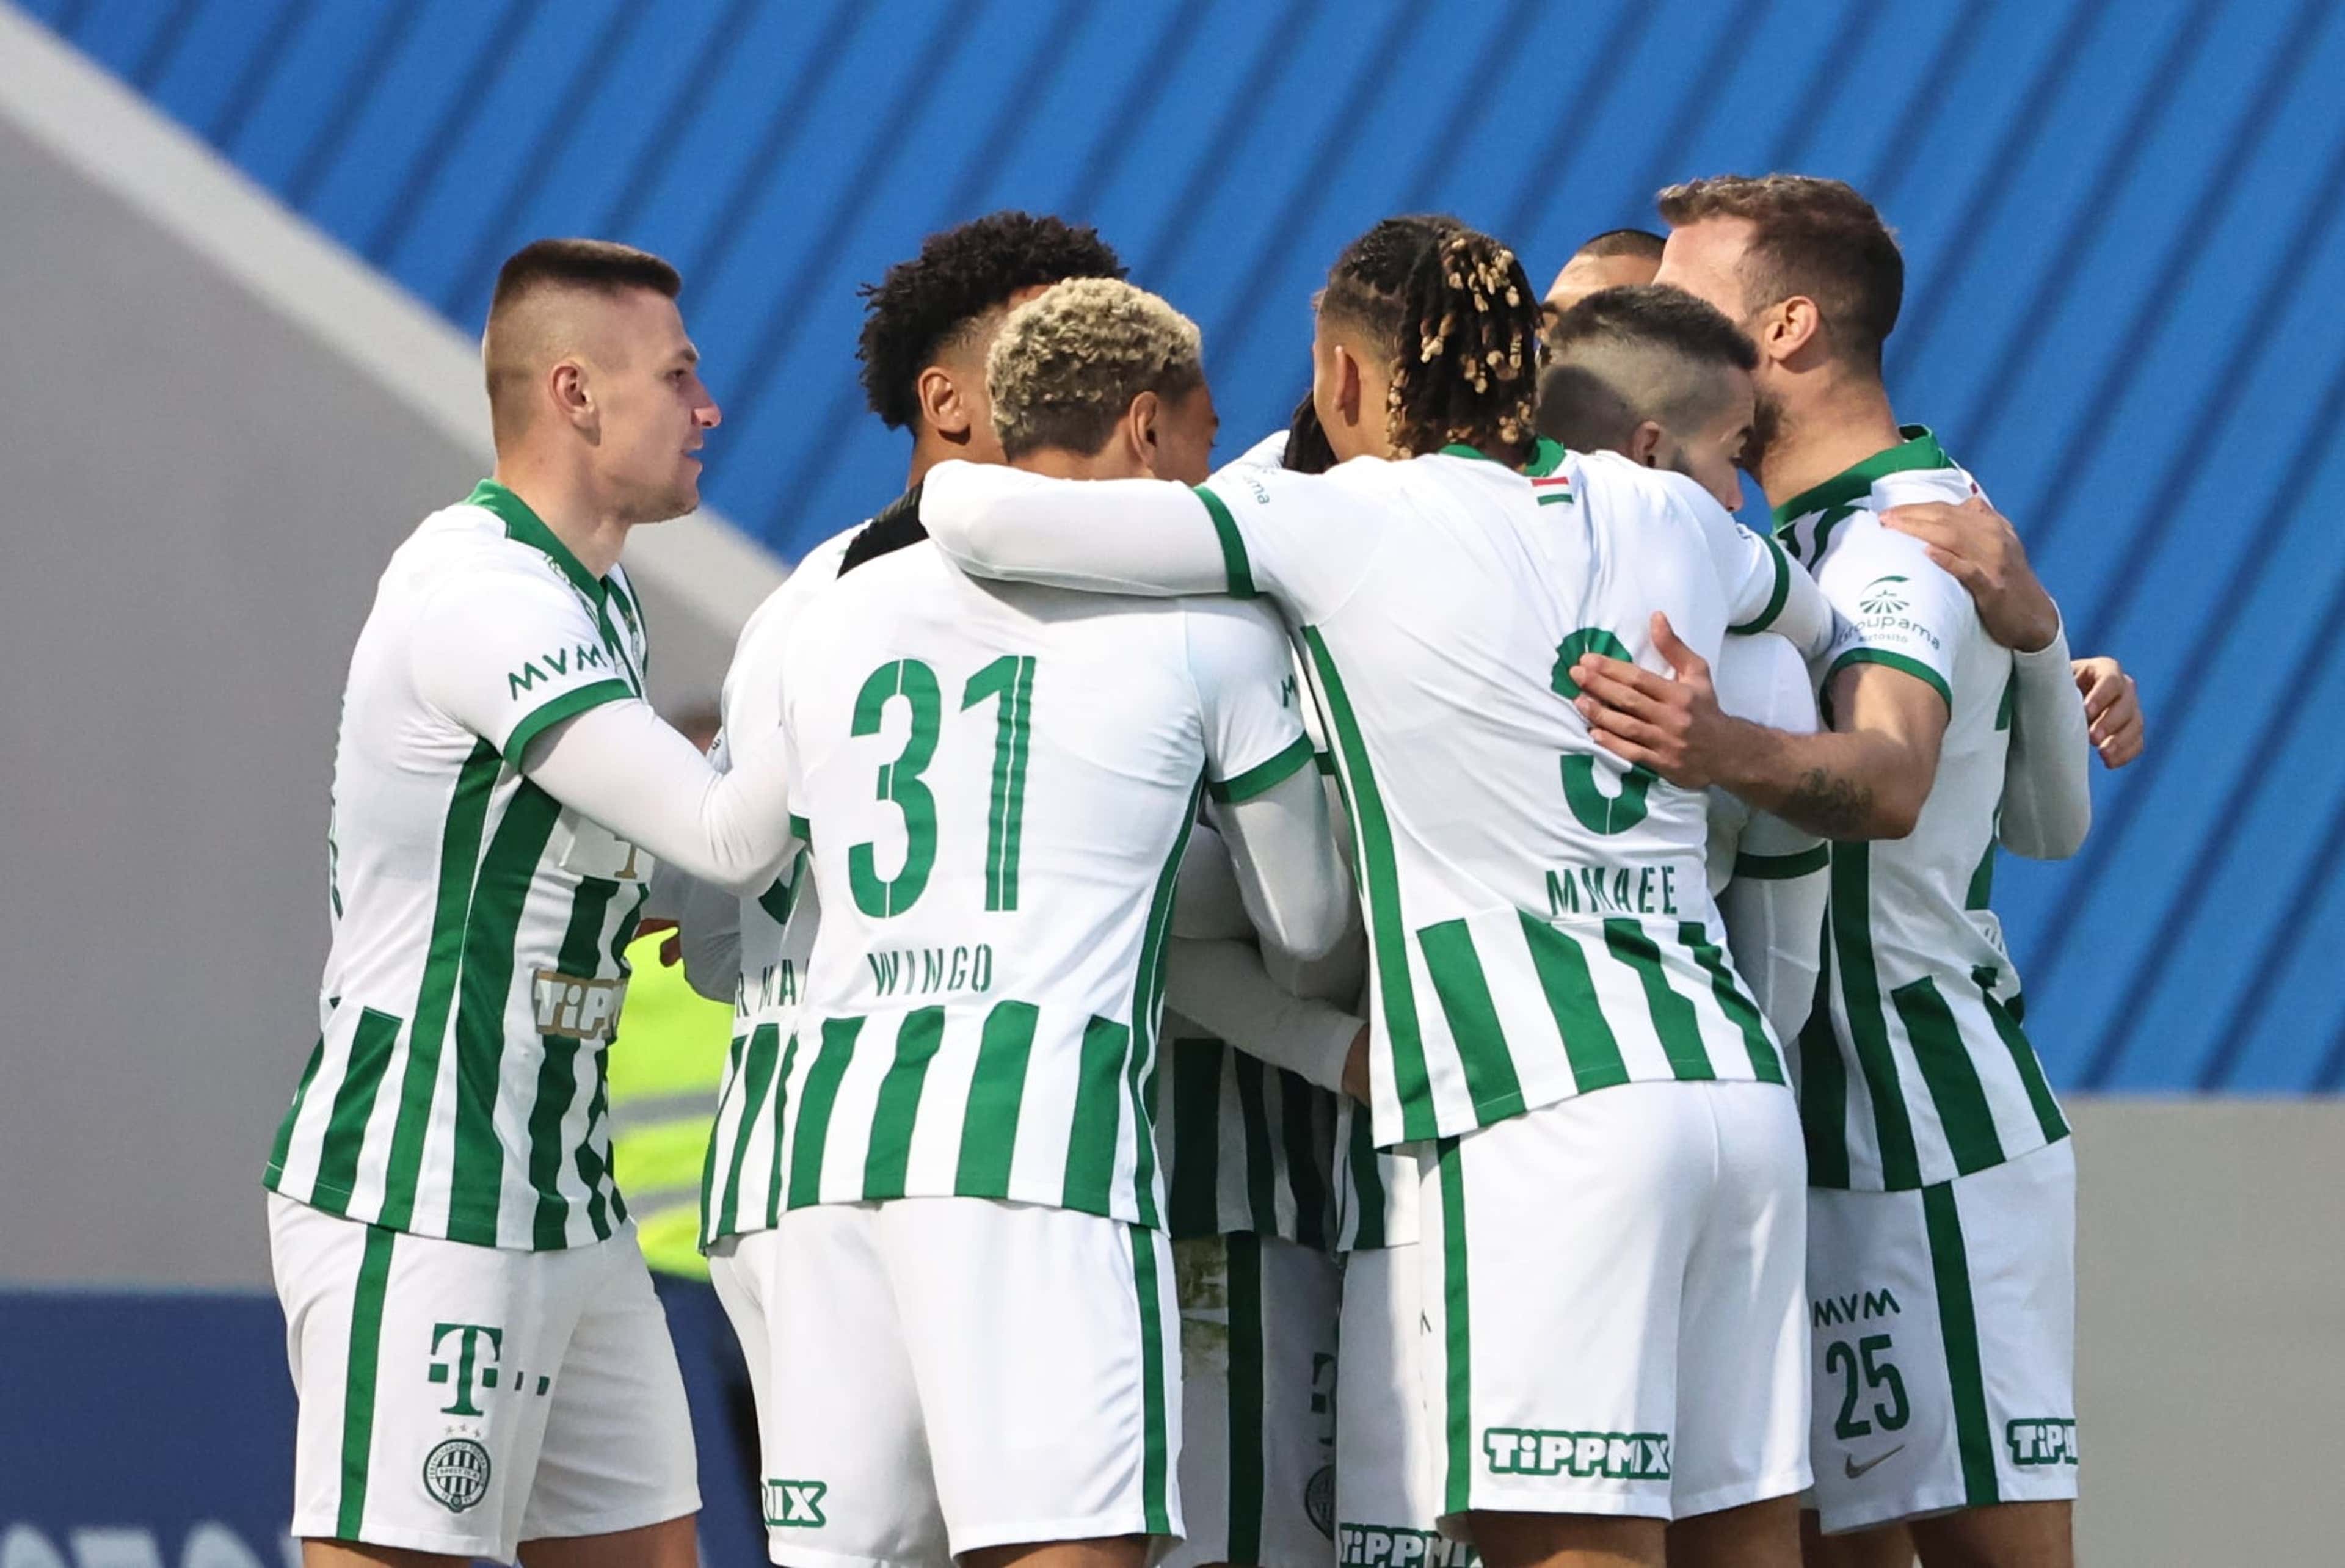 Ferencvárosi TC - Újpest FC: A magyar labdarúgás örökrangadója -  Sportfogadás